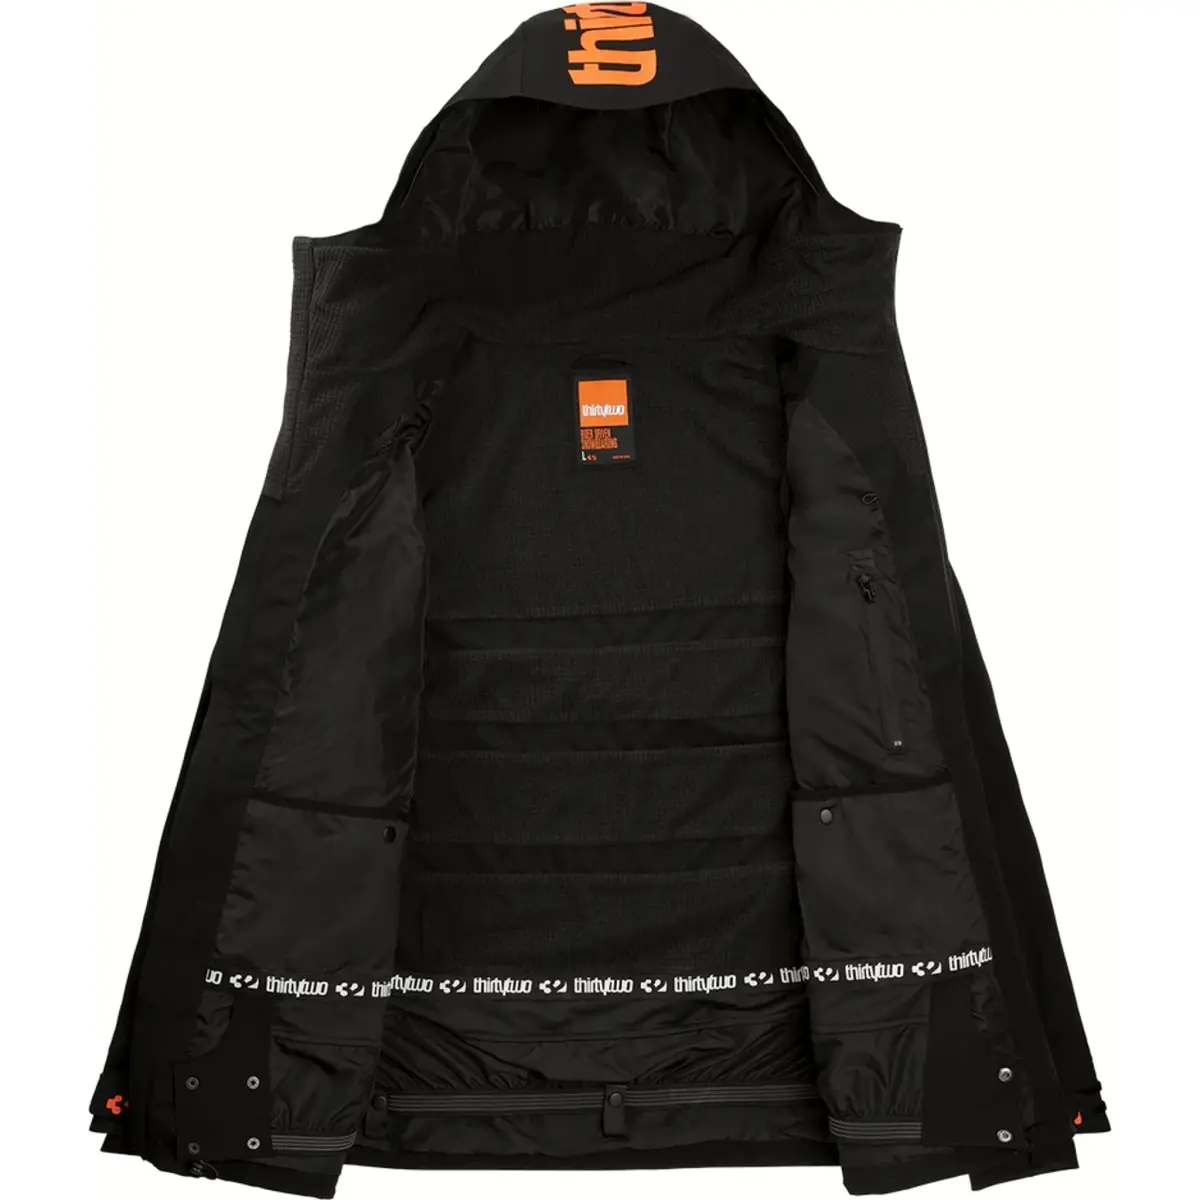 THIRTY TWO TM JACKET BLACK Thirty two TM Jacket black è una perfetta giacca da snowboard. Questa bomba di giacca si adatta a tutte le situazioni essendo leggera e traspirabile e stilosa.